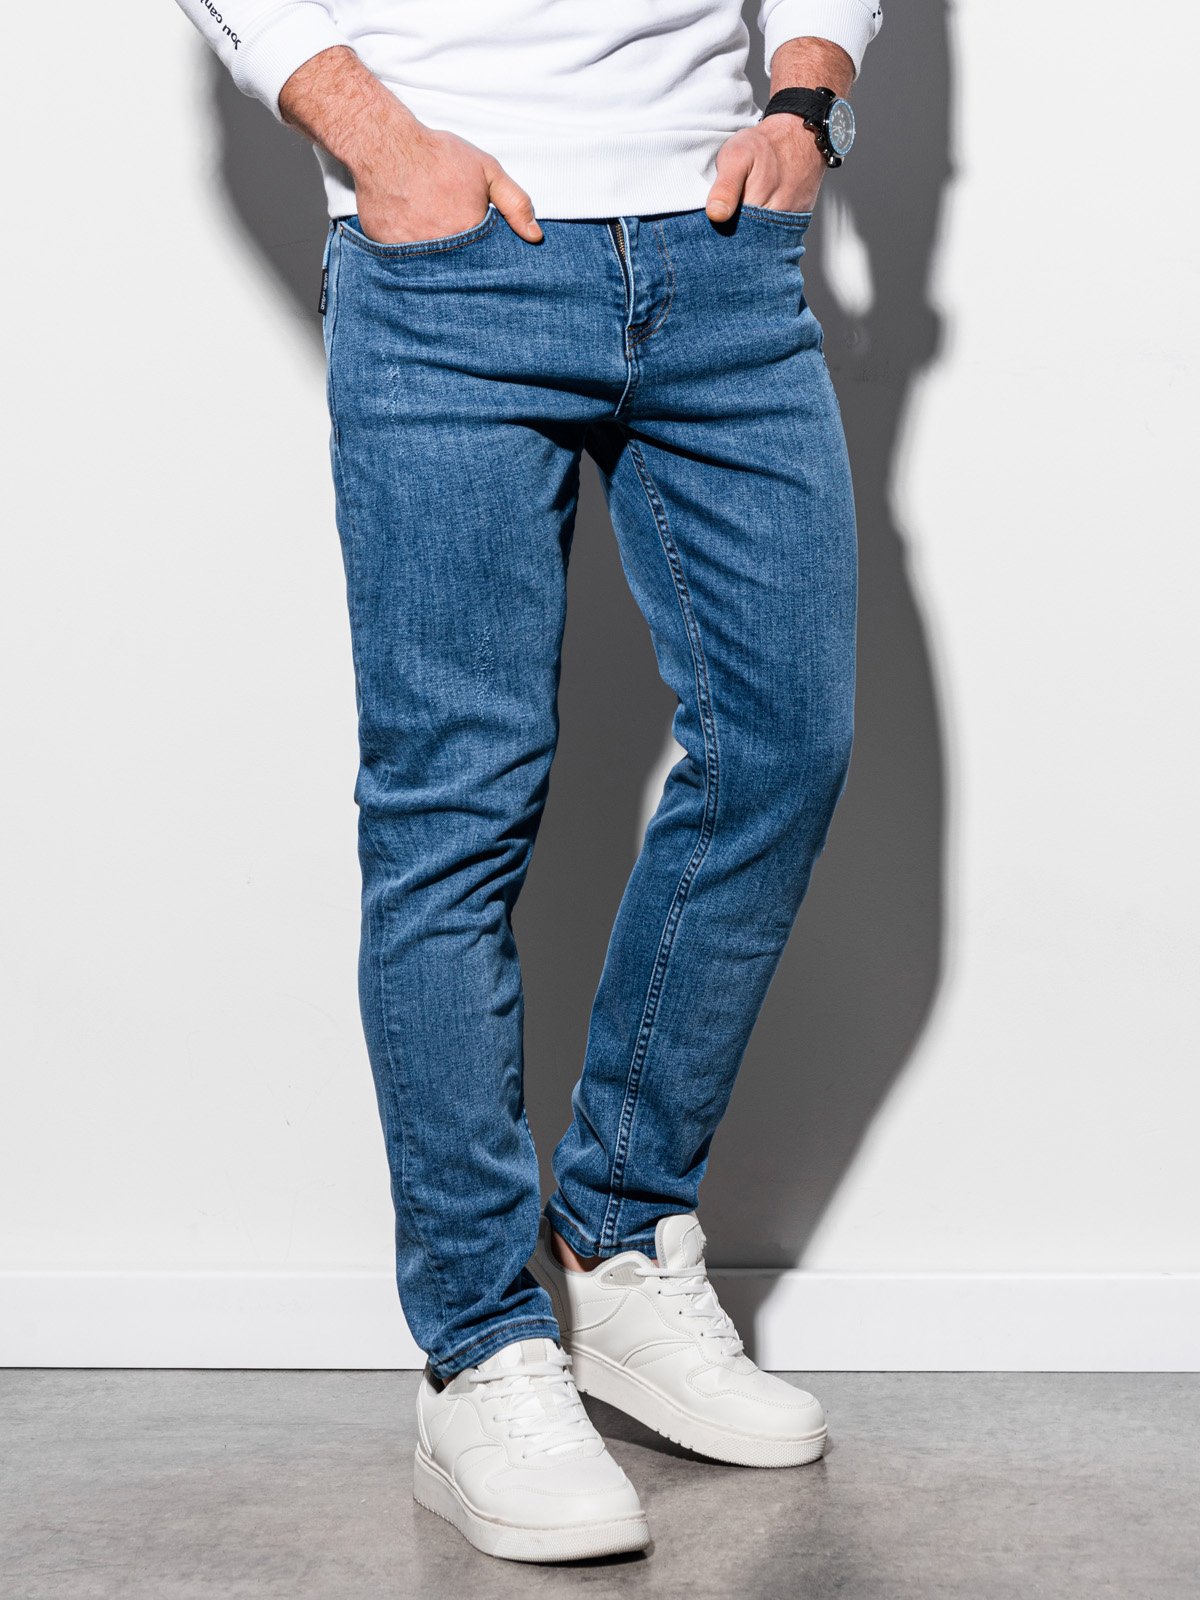 Men's jeans P940 - light blue | MODONE ...